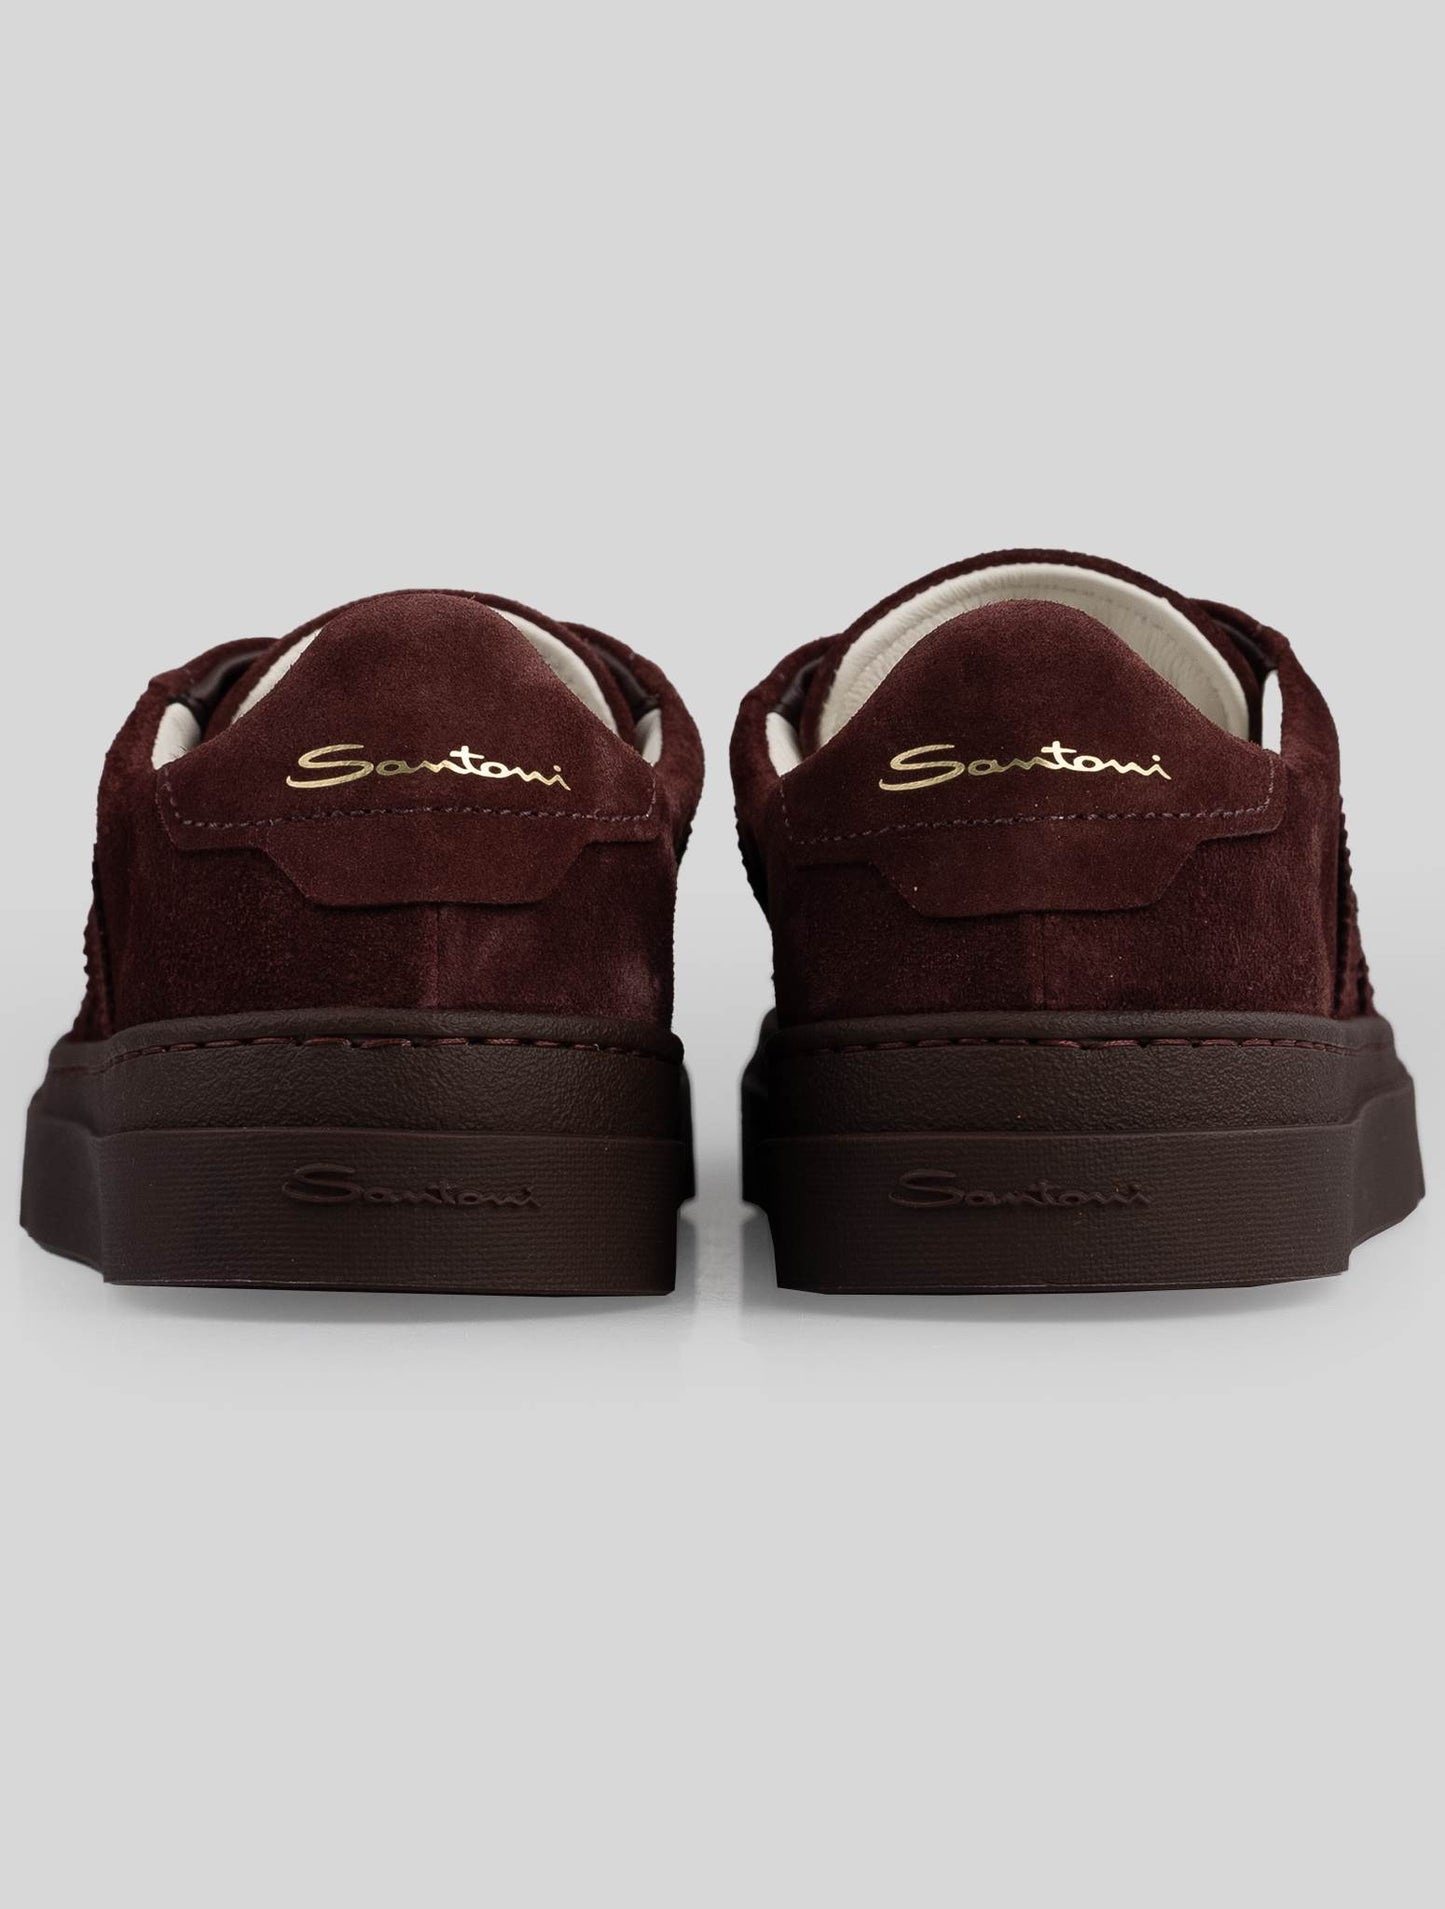 Santoni burgundy leather suede sneakers